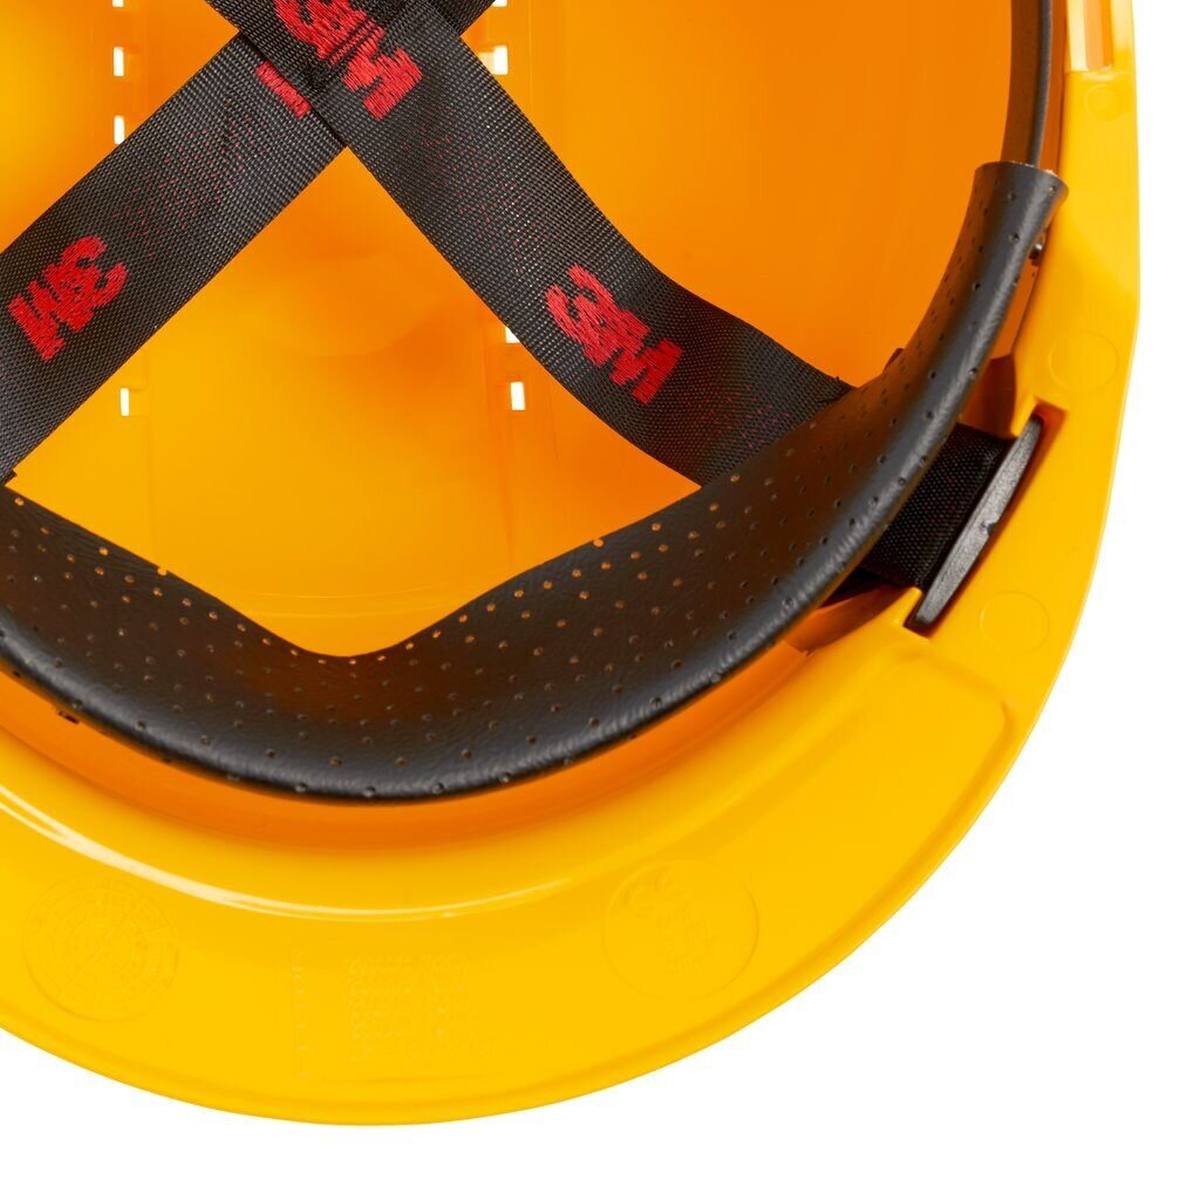 3M G3000 casque de protection G30CUY en jaune, ventilé, avec uvicator, pinlock et bande de soudure en plastique